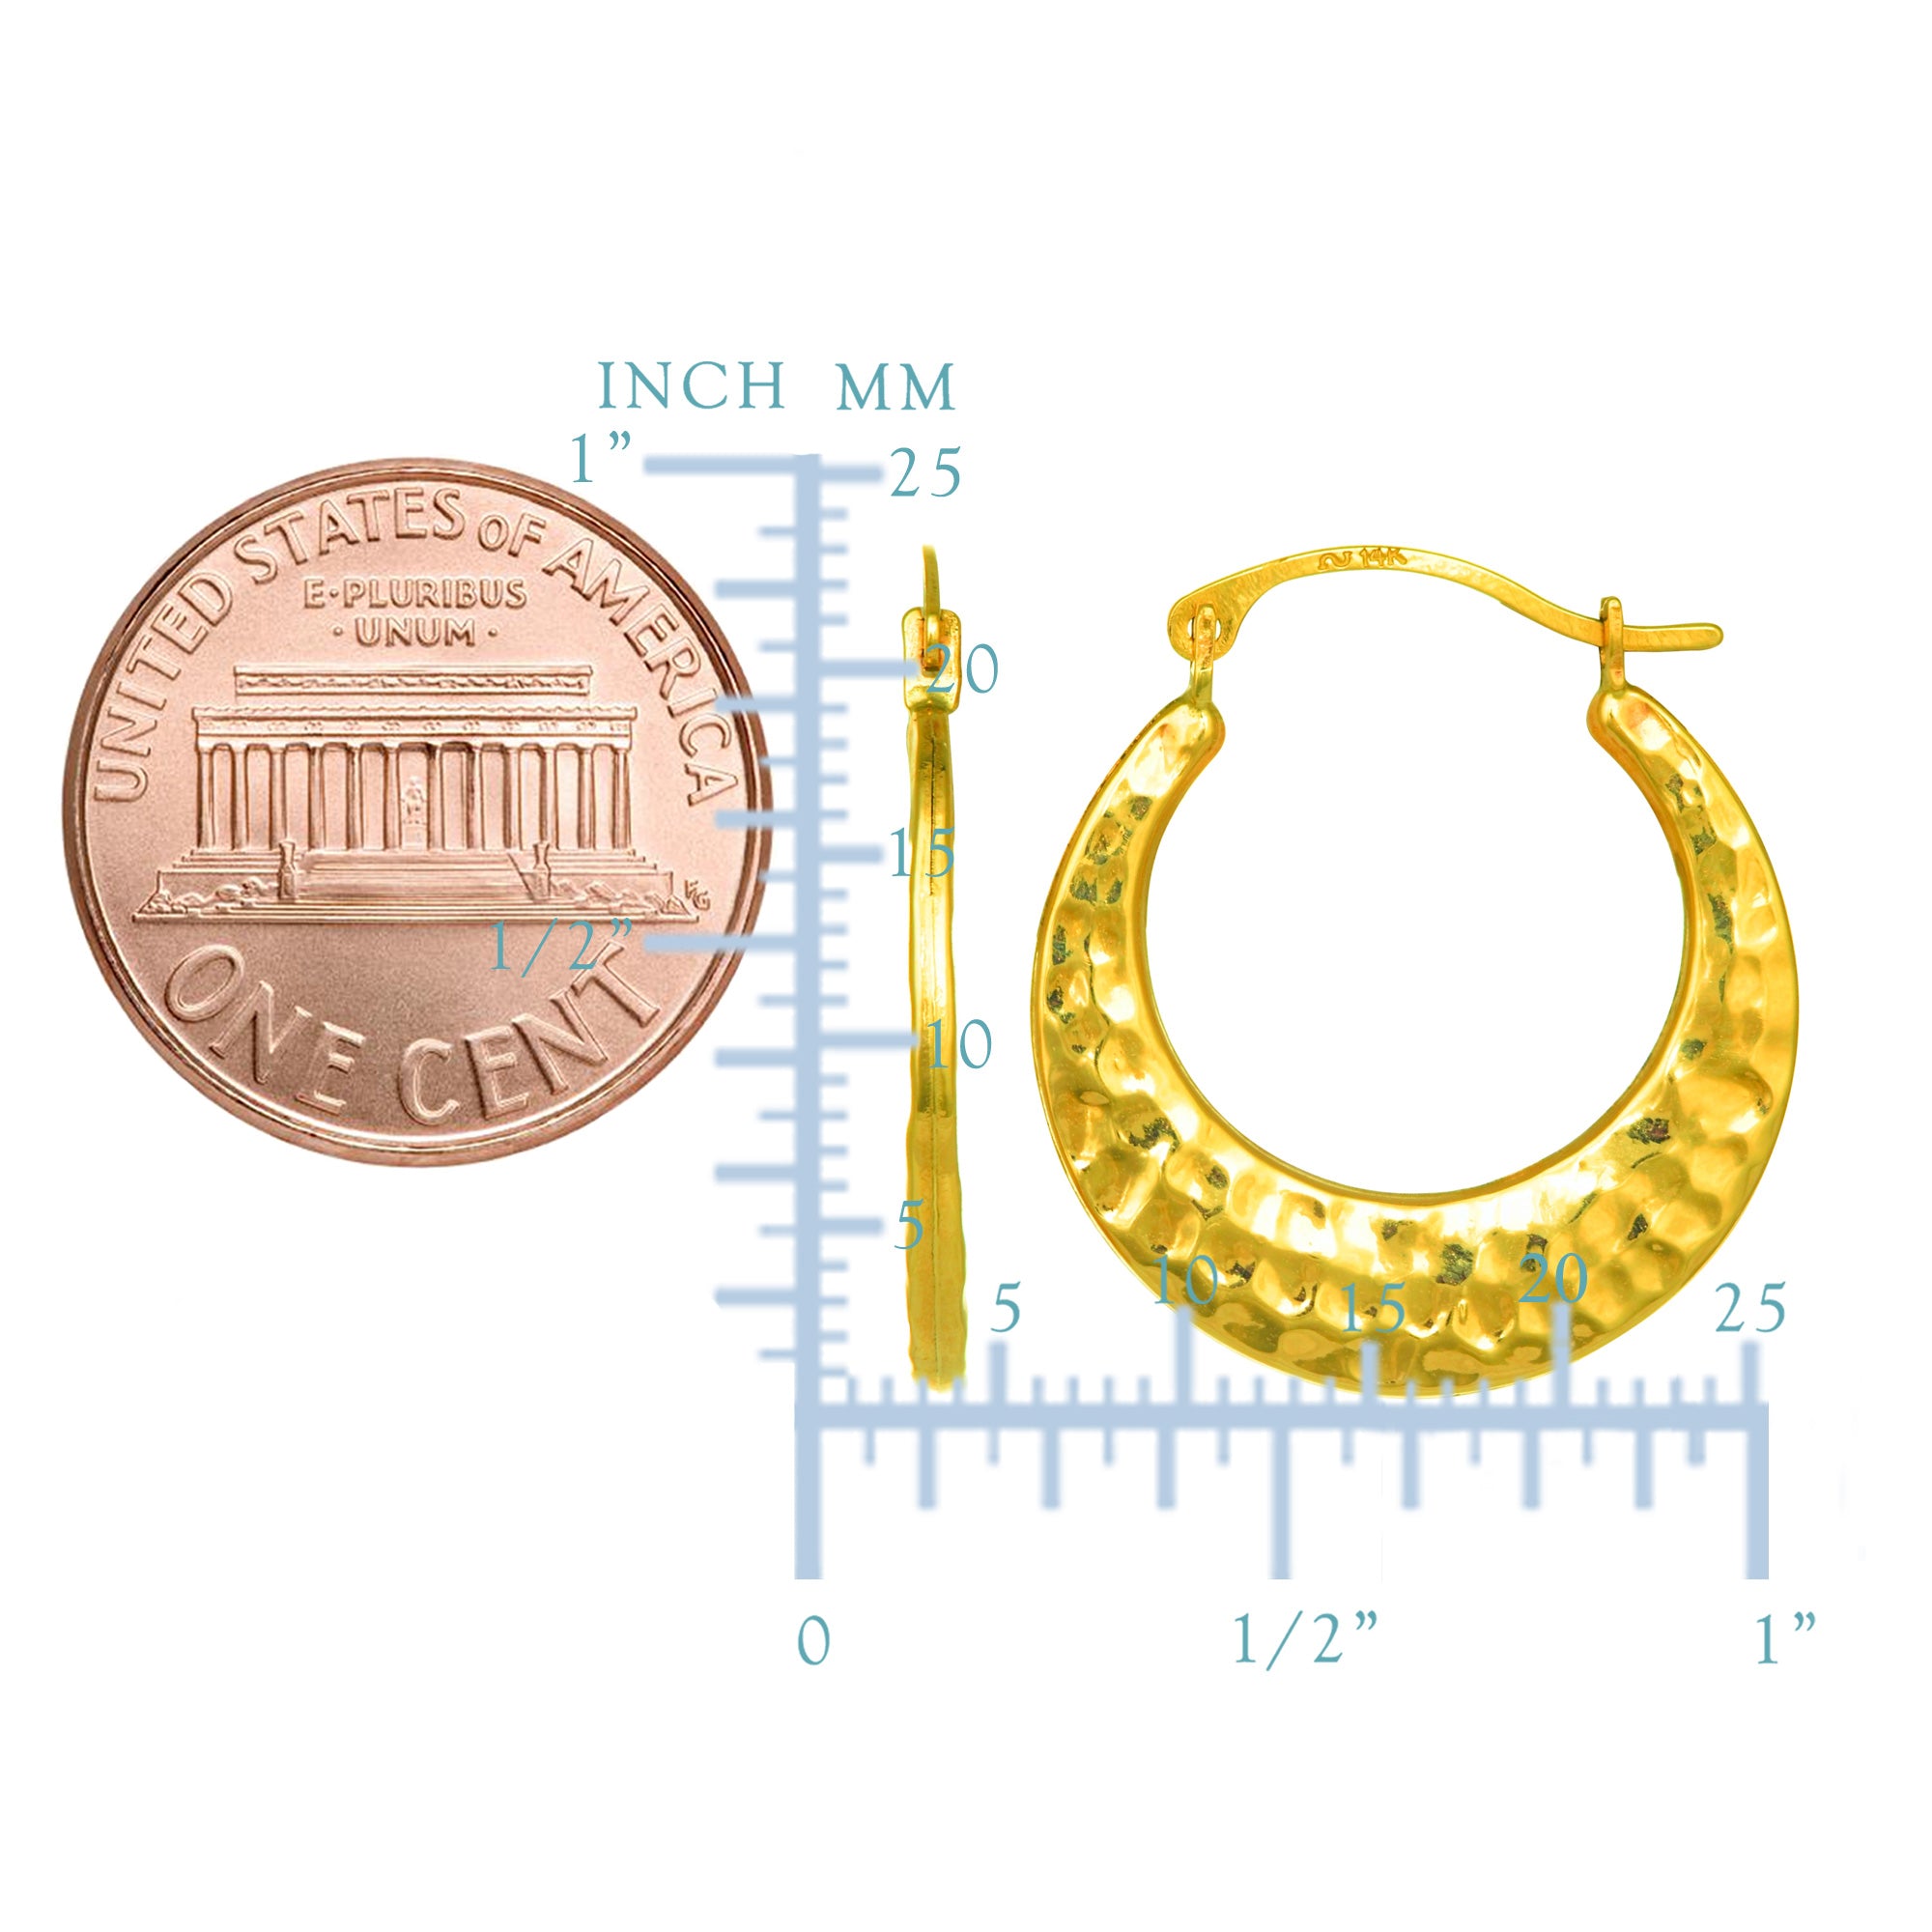 10k gul guld hamrede runde bøjle øreringe, diameter 20 mm fine designer smykker til mænd og kvinder